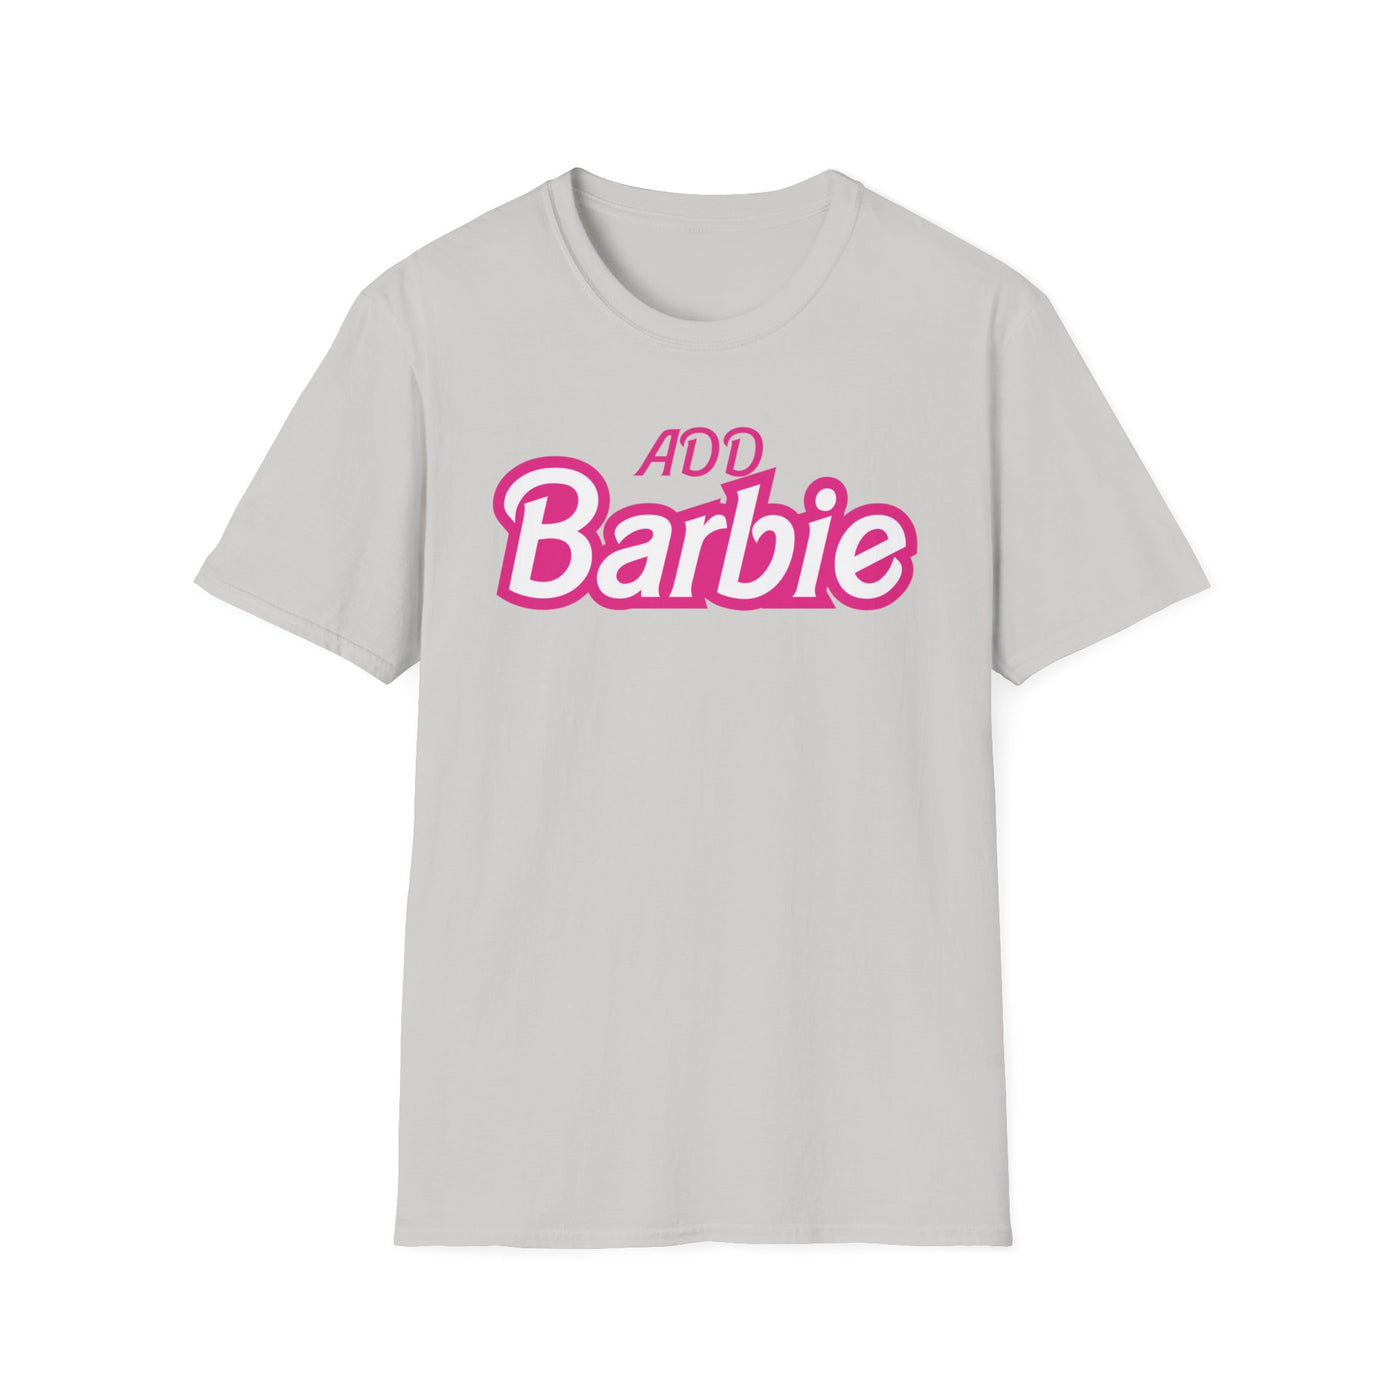 ADD Barbie